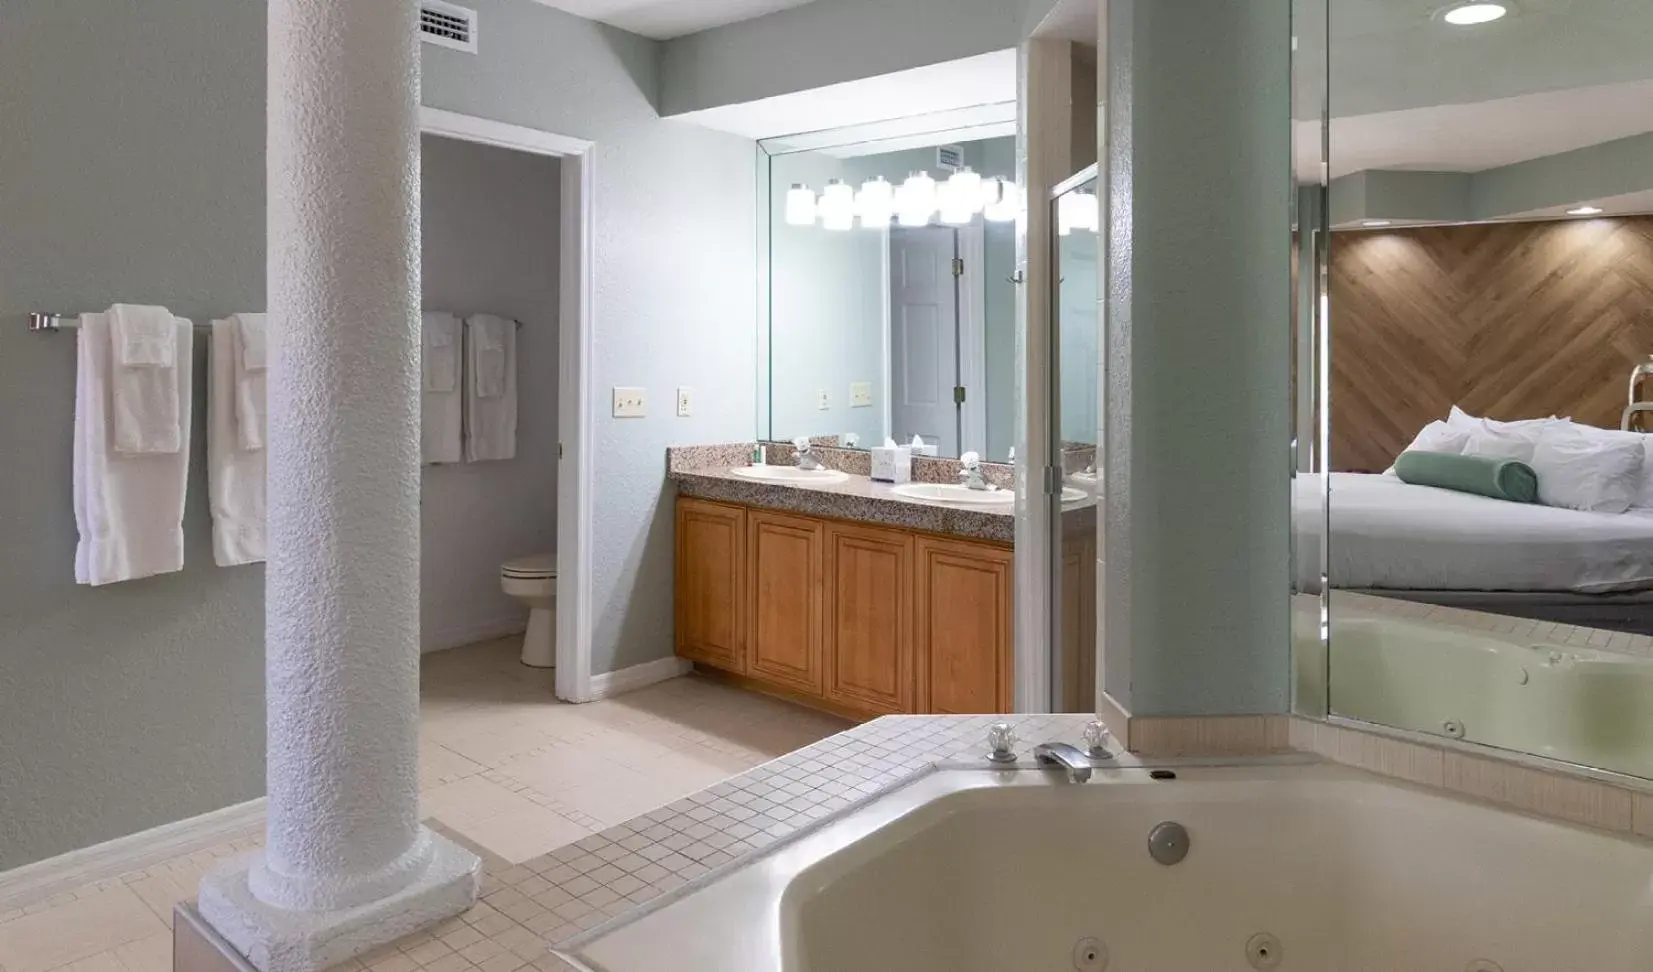 Bathroom in Star Island Resort and Club - Near Disney